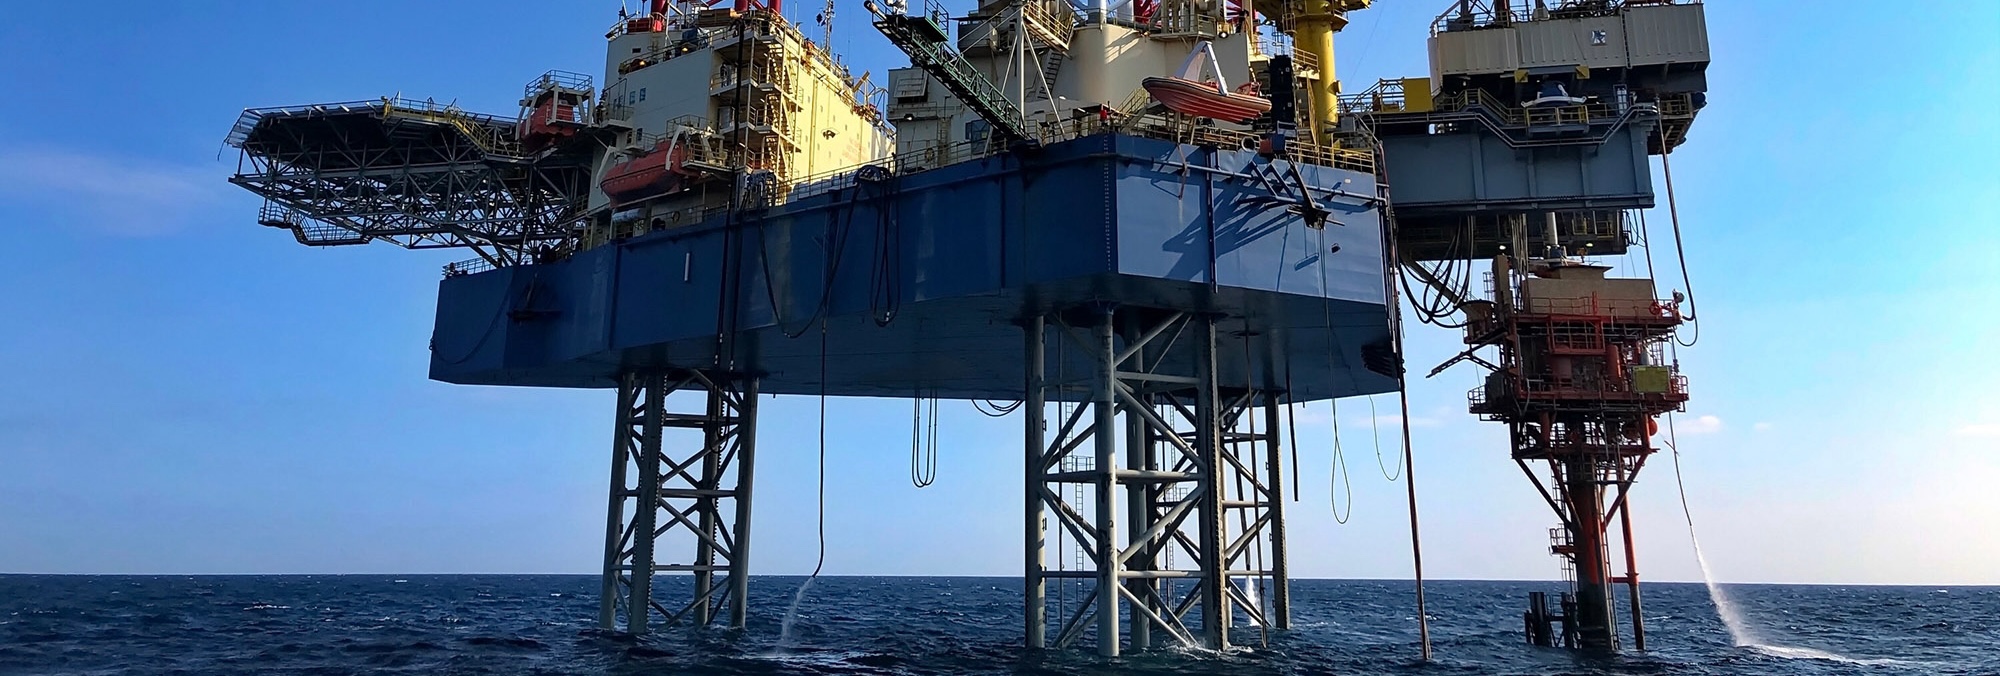 Oil platform in Adriatic sea